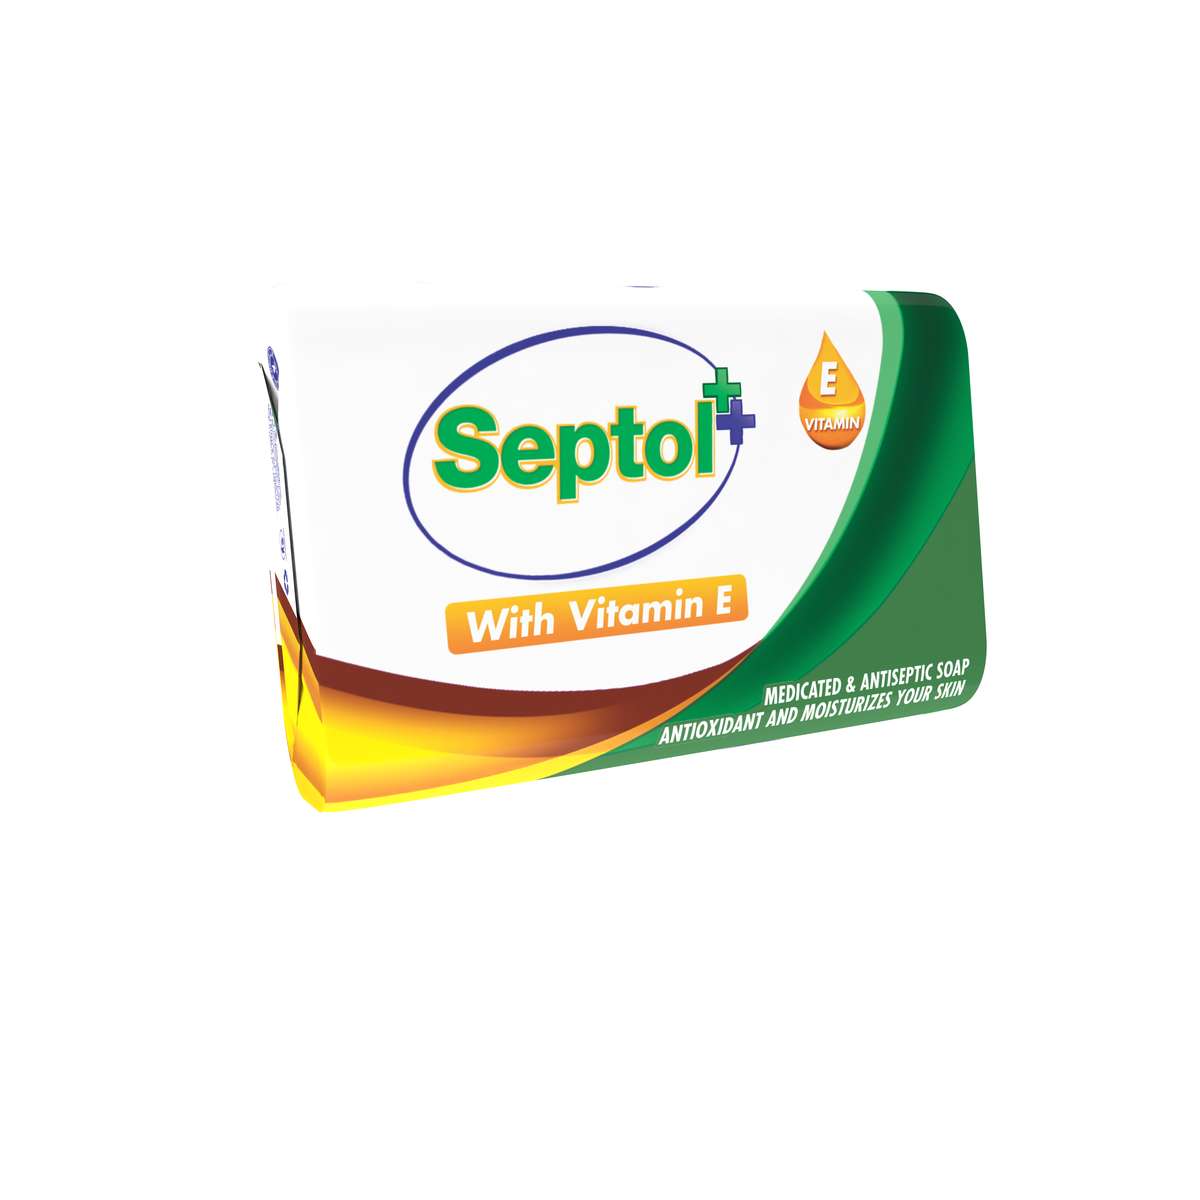 Savon antiseptique Septol à la vitamine E puzzle en ligne